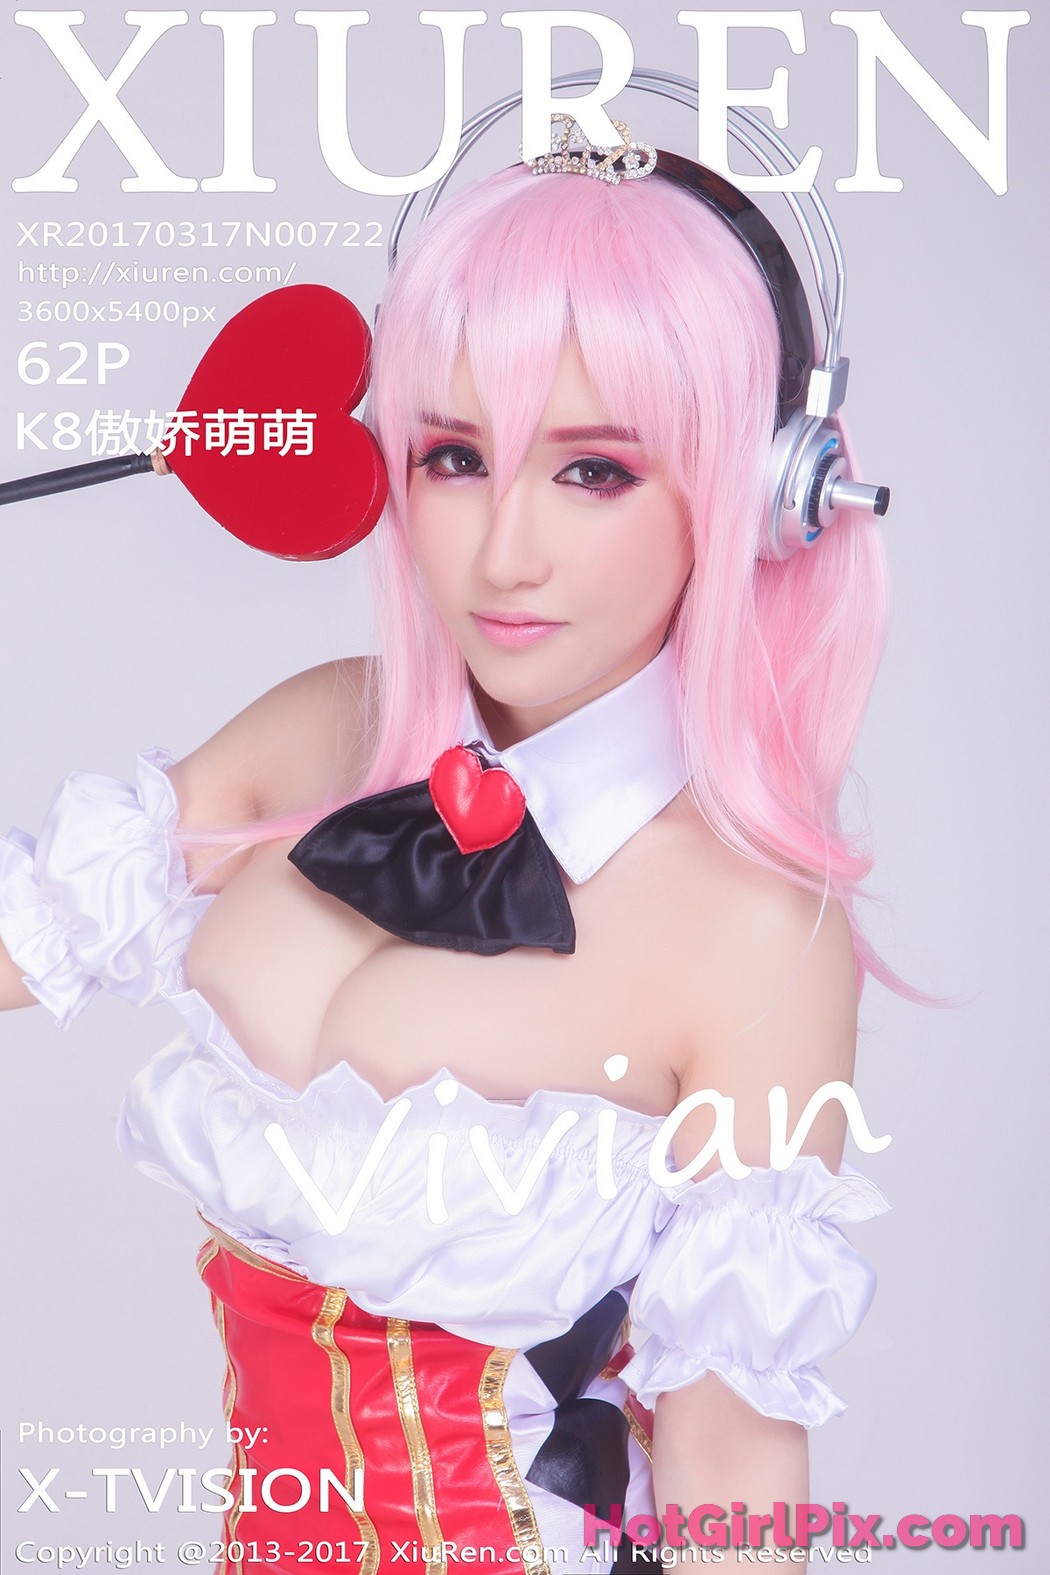 [XIUREN] No.722 K8傲娇萌萌Vivian Aojiao Meng Meng Cover Photo